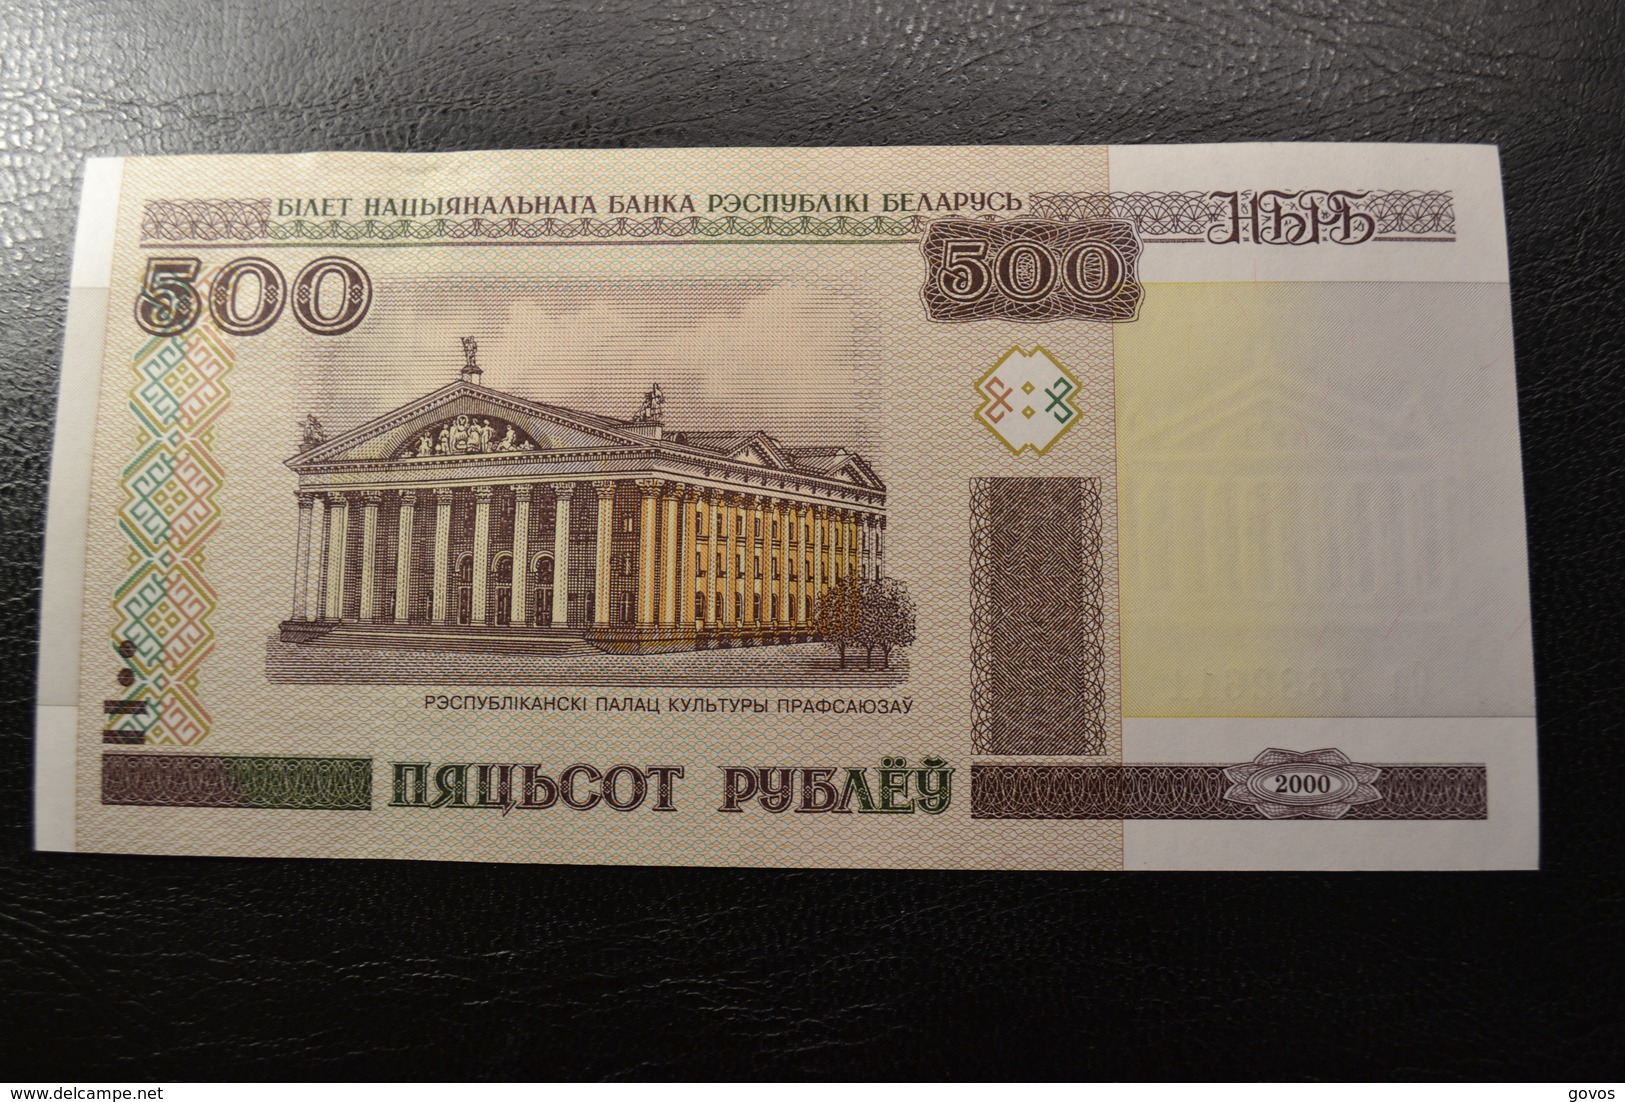 Belarus 500 Rubles 2000 Year UNC - Belarus